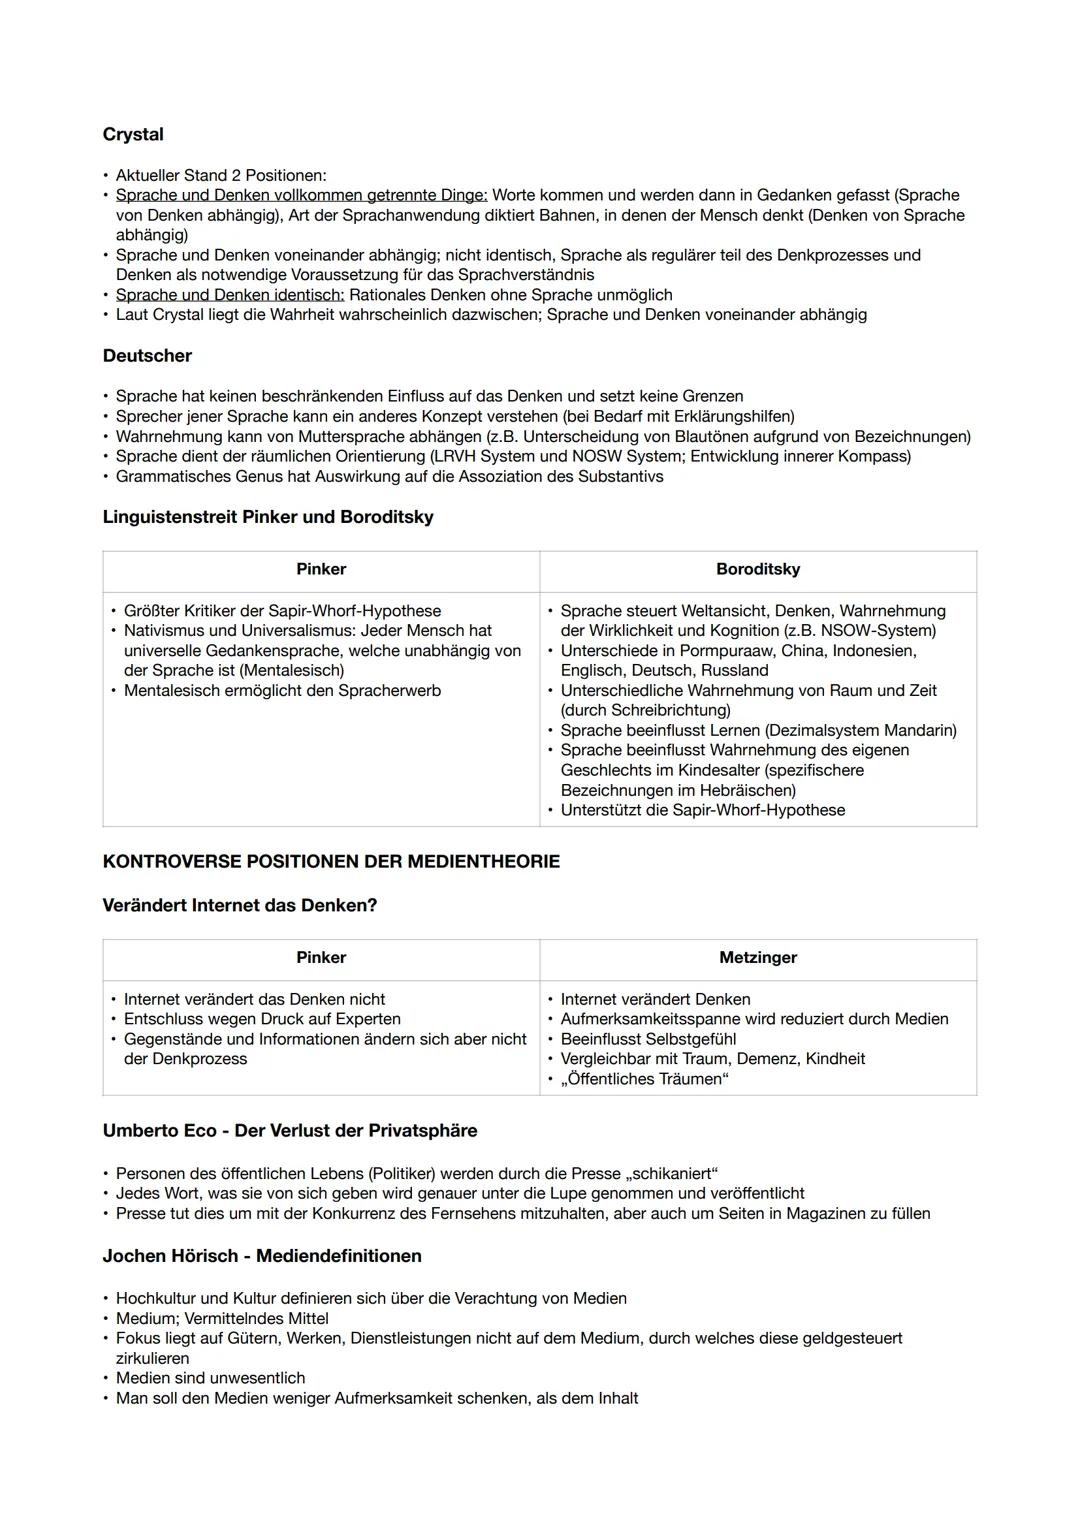 Deutsch Abitur
Vorgaben; https://www.standardsicherung.schulministerium.nrw.de/cms/zentralabitur-gost/faecher/getfile.php?file=4987
Operator